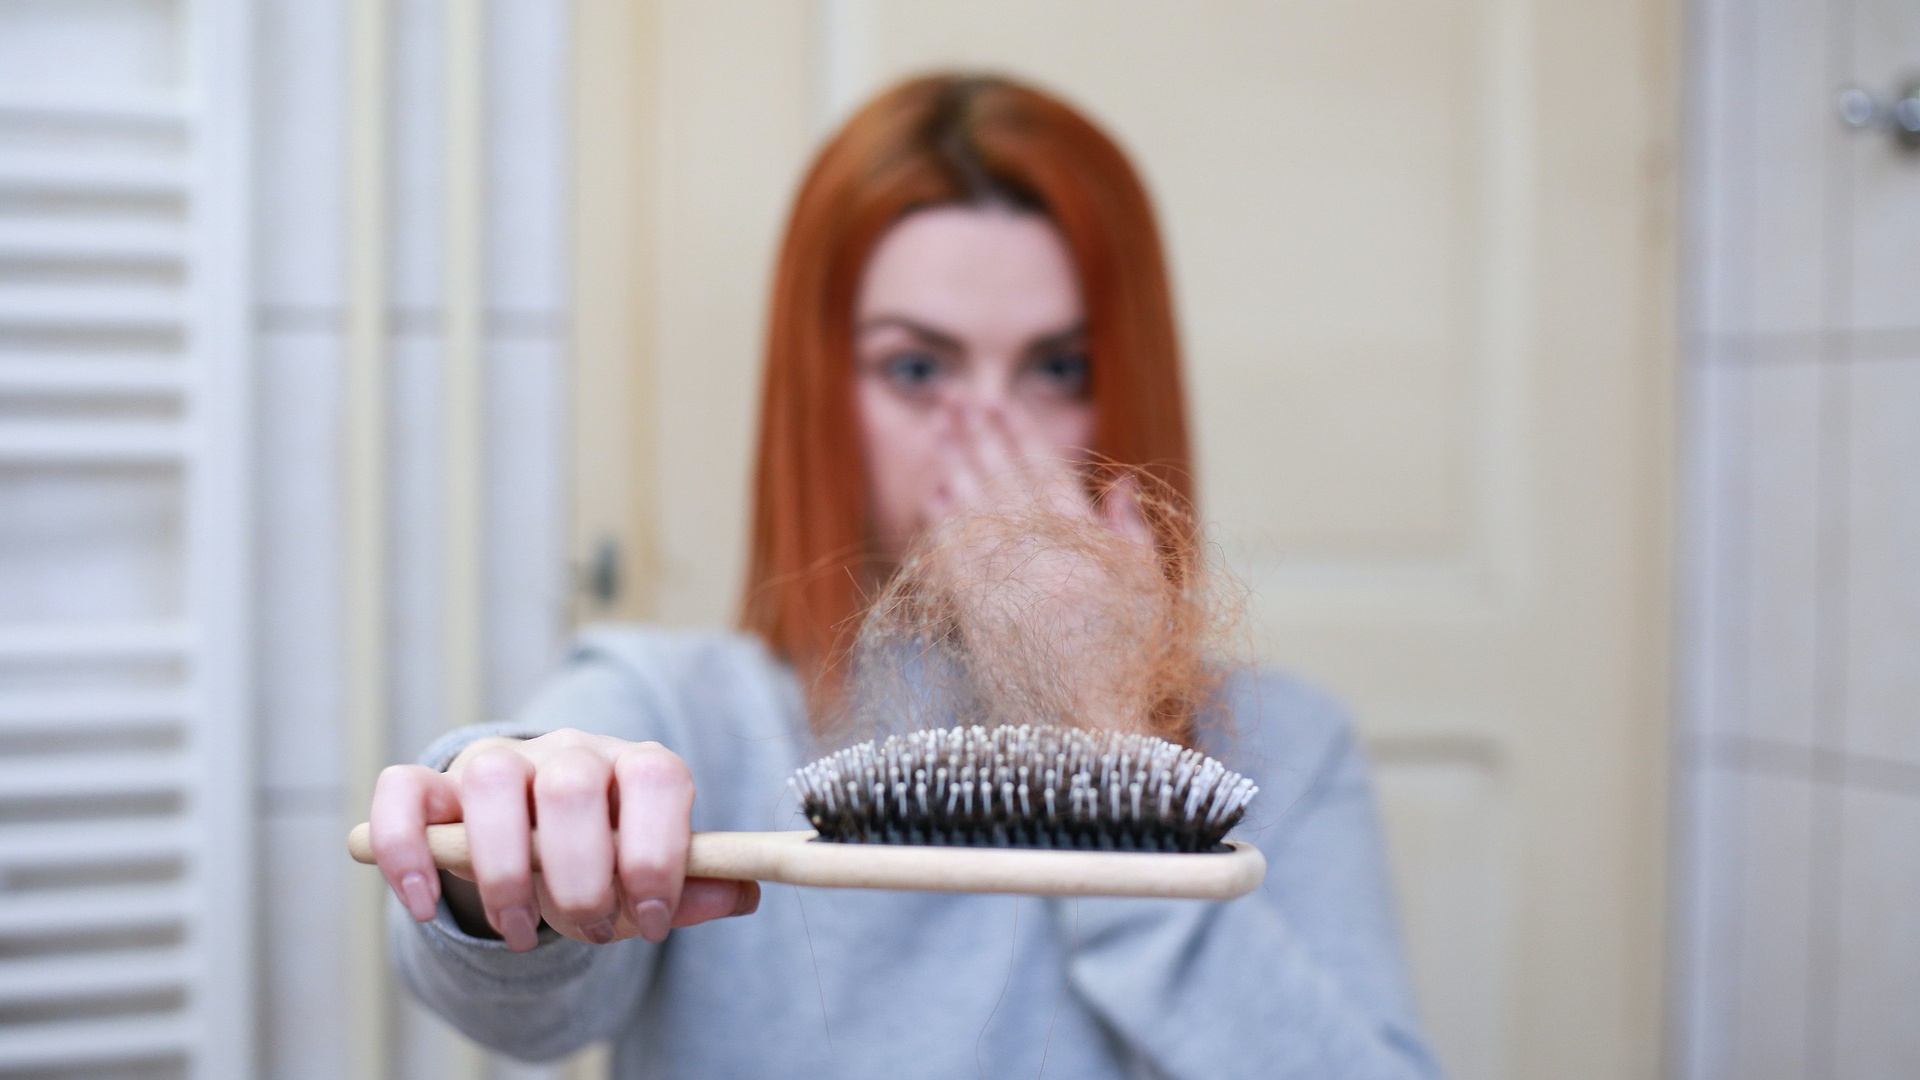 Kétségbeesett nő mutatja a kihullot haját a hajkefén